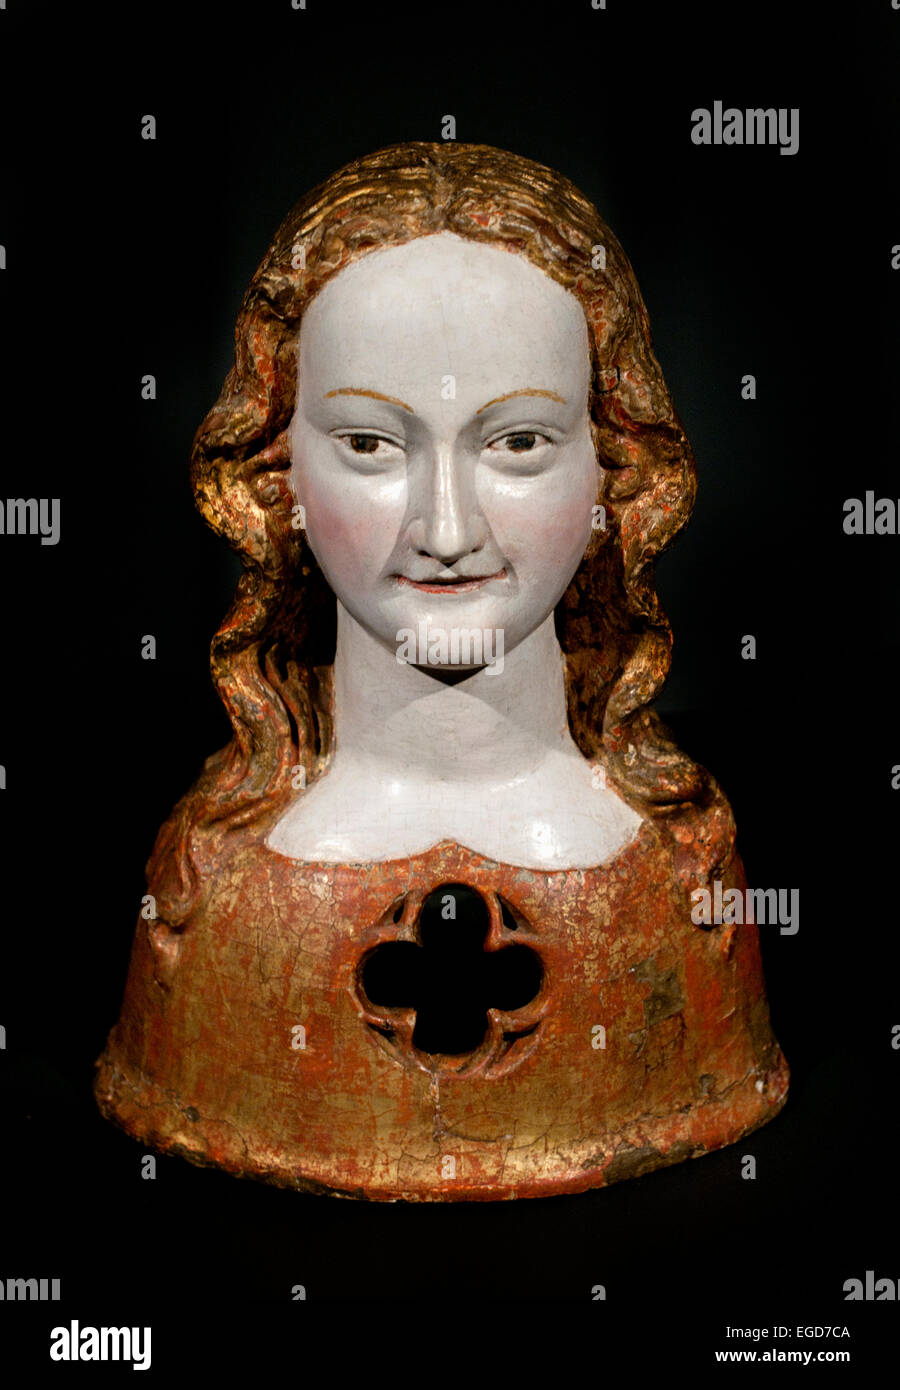 Buste reliquaire de l'une de Saint Ursula's Virgins1325-1350 Cologne au moyen âge médiéval Allemand Allemagne Rijksmuseum Amsterdam Banque D'Images